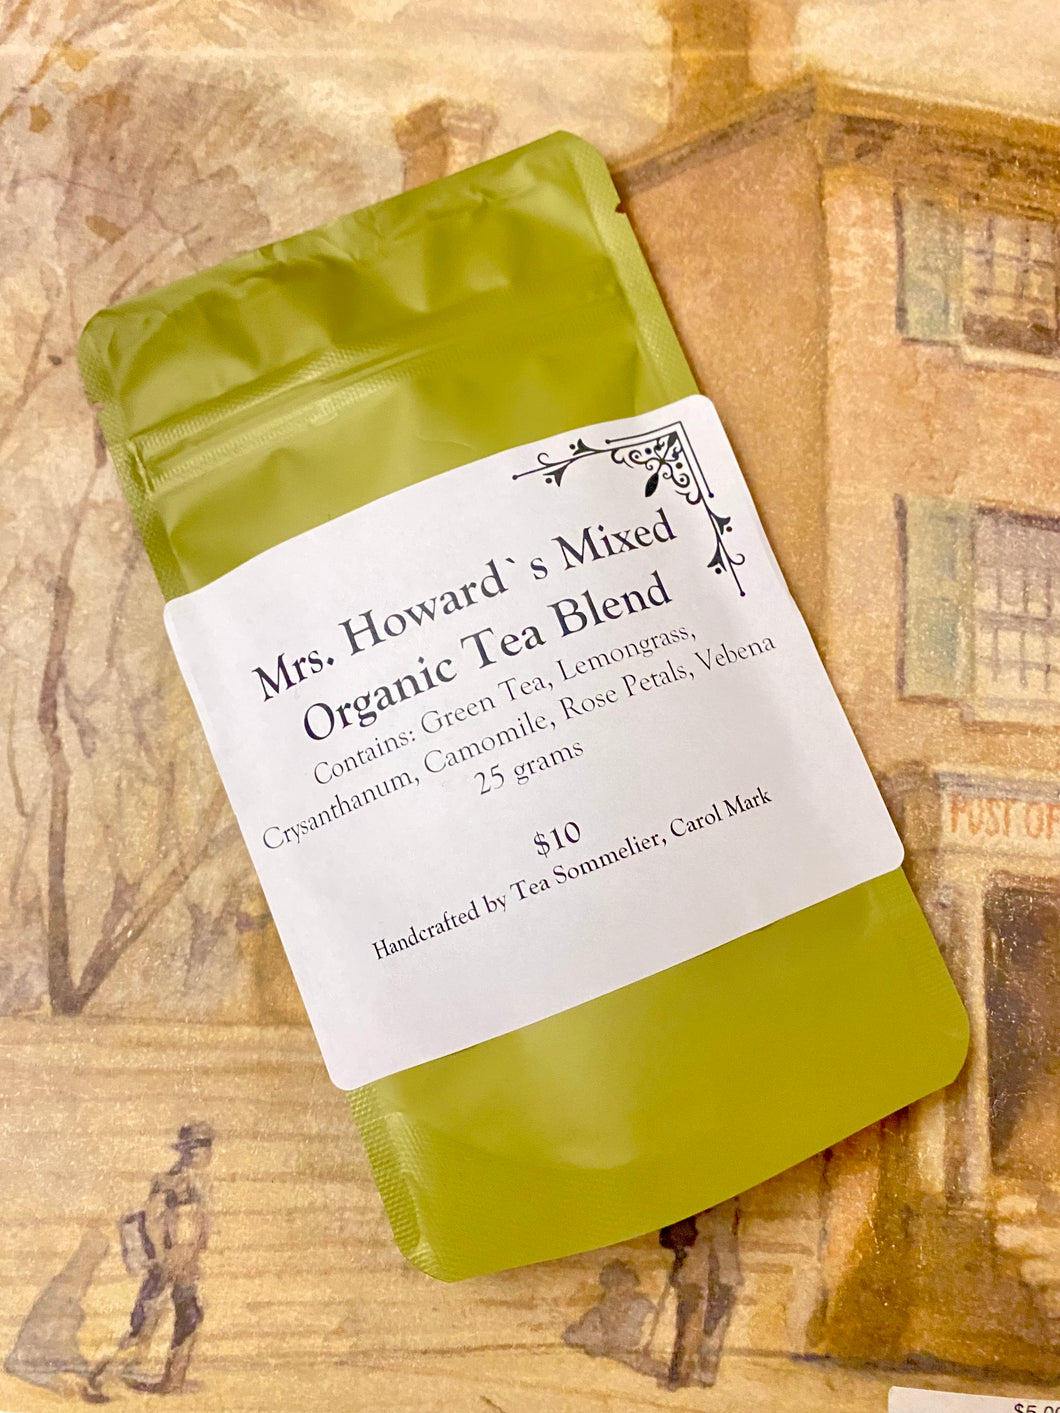 Tea Blend: Mrs. Howard's Tea Blend